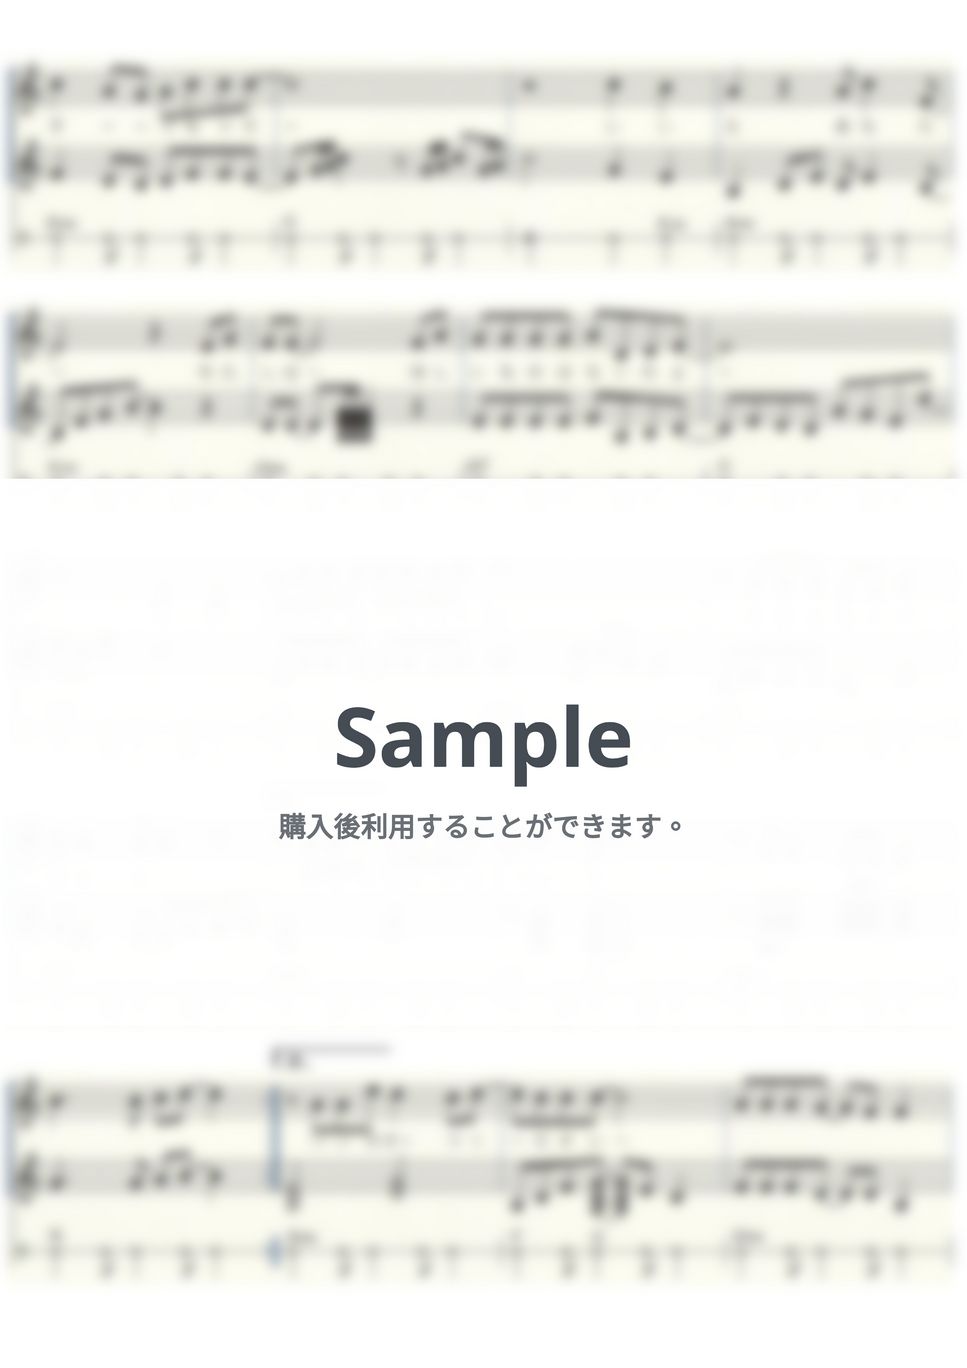 太田裕美 - 木綿のハンカチーフ (ウクレレ三重奏/中級) by ukulelepapa